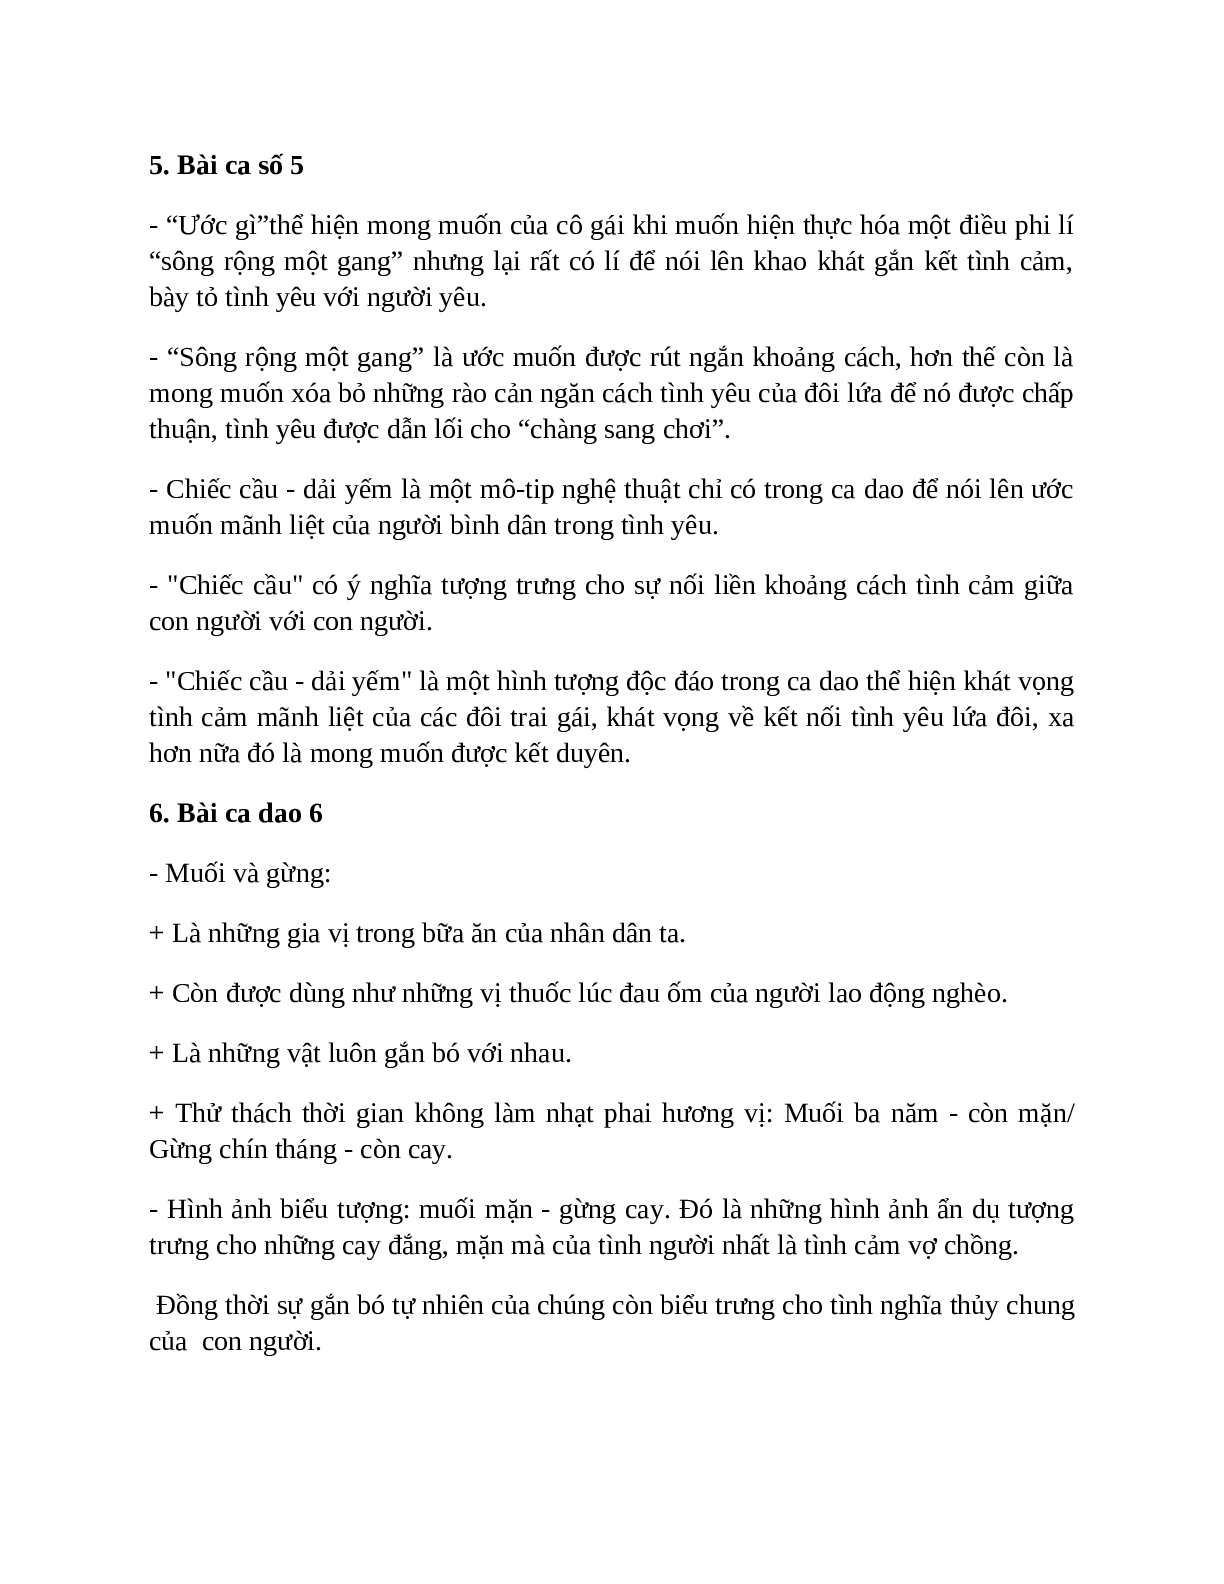 Sơ đồ tư duy bài Ca dao than thân, yêu thương tình nghĩa dễ nhớ, ngắn nhất - Ngữ văn lớp 10 (trang 8)